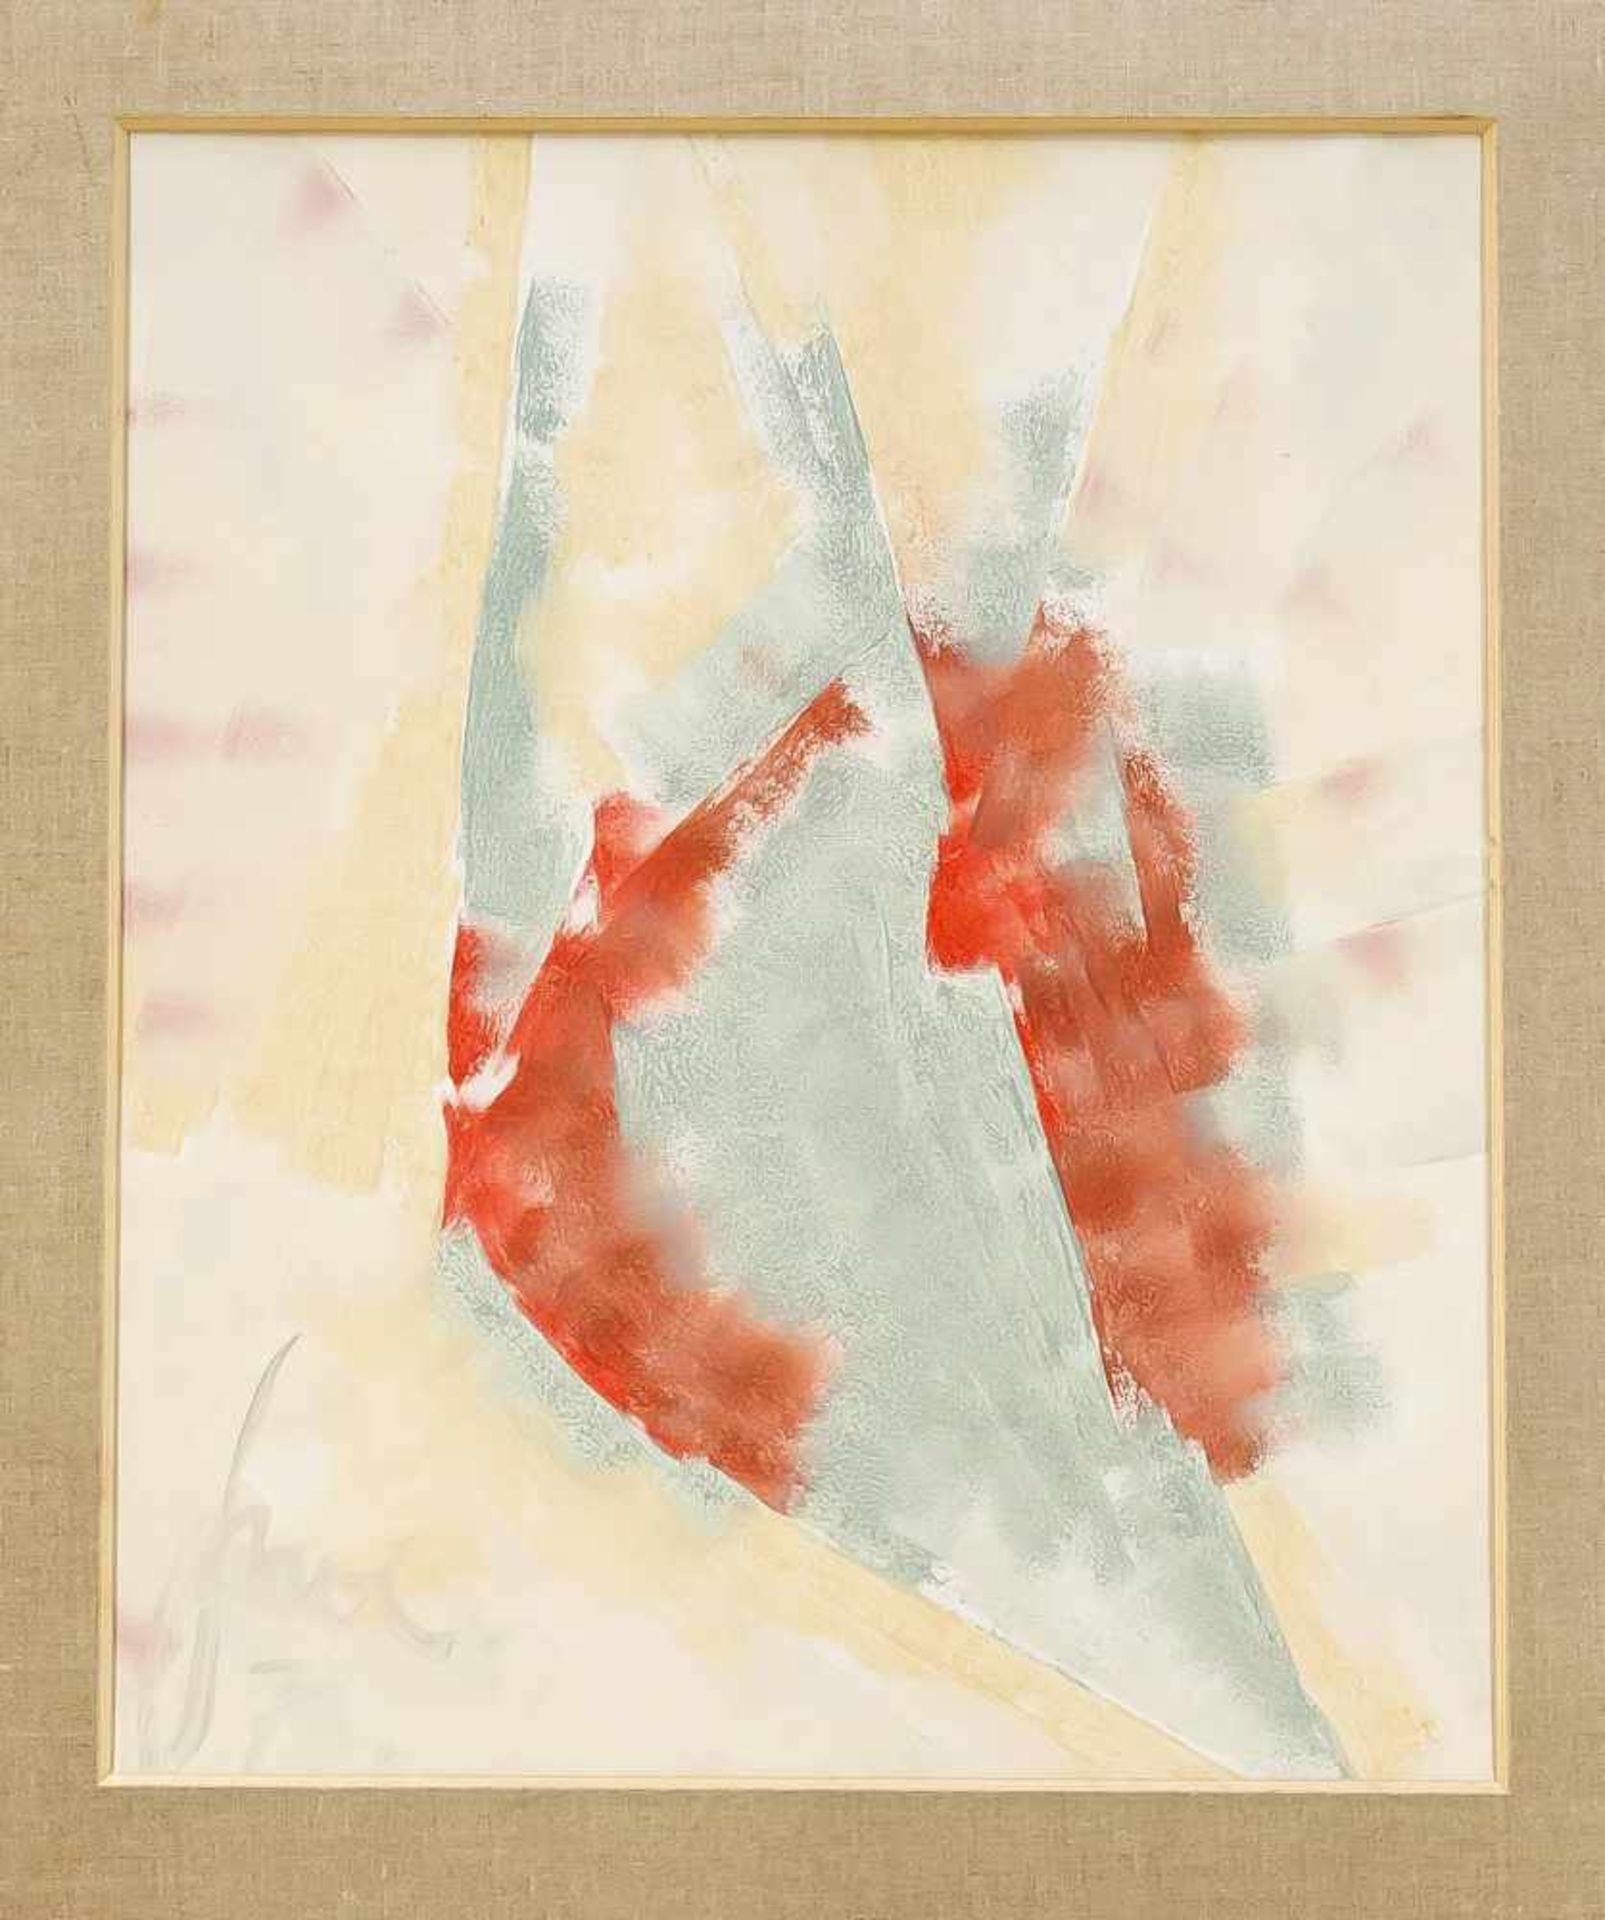 Hermann Henry Gowa (1902-1990), dt. Maler und Bühnenbildner, Komposition C.R. 4/31, wohl